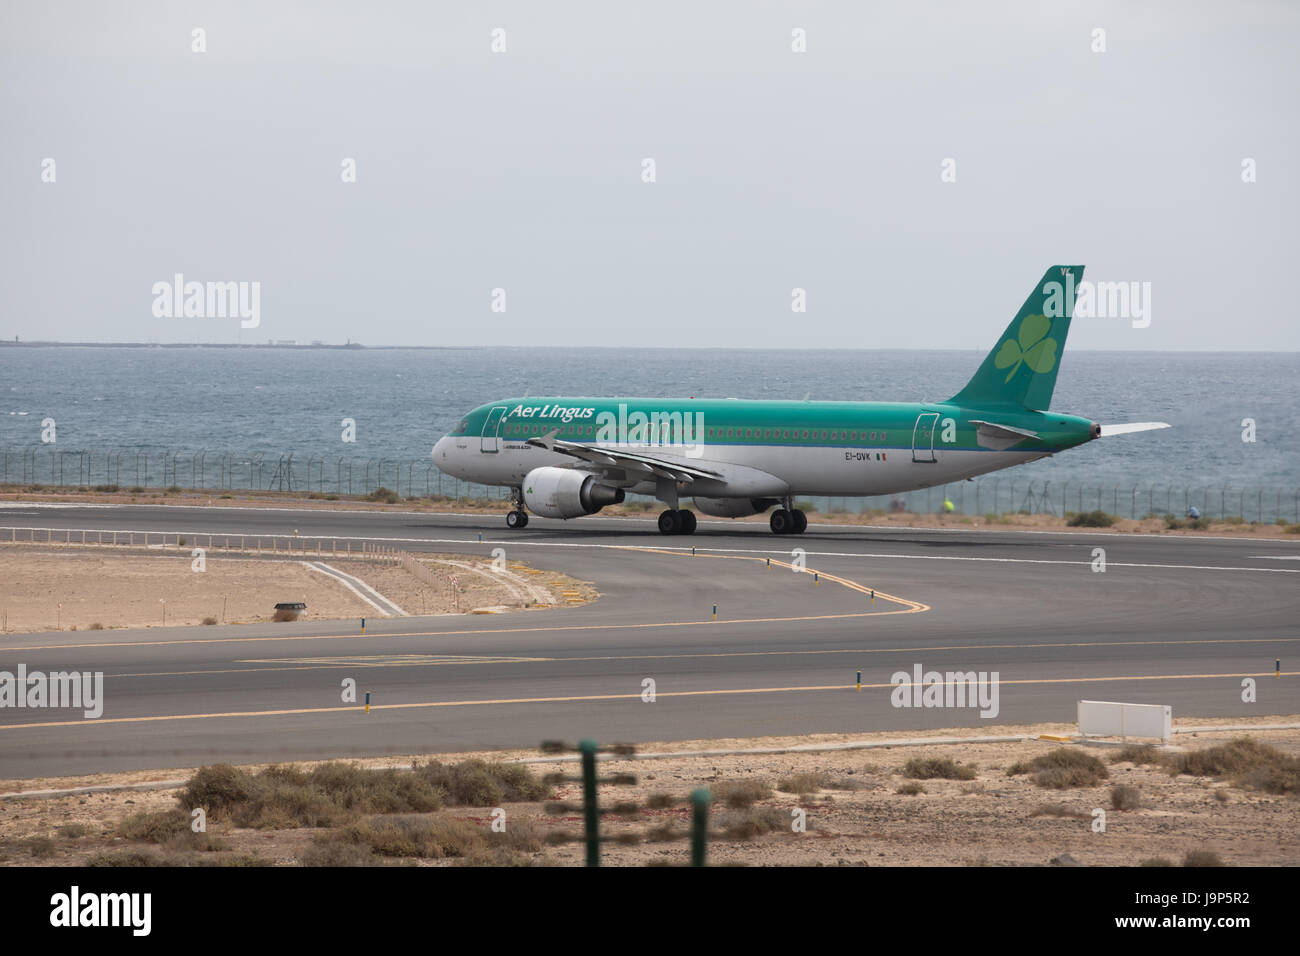 ARECIFE, Spagna - Aprile 15 2017: Airbus A320 di Aer Lingus pronto al decollo a Lanzarote Airport Foto Stock